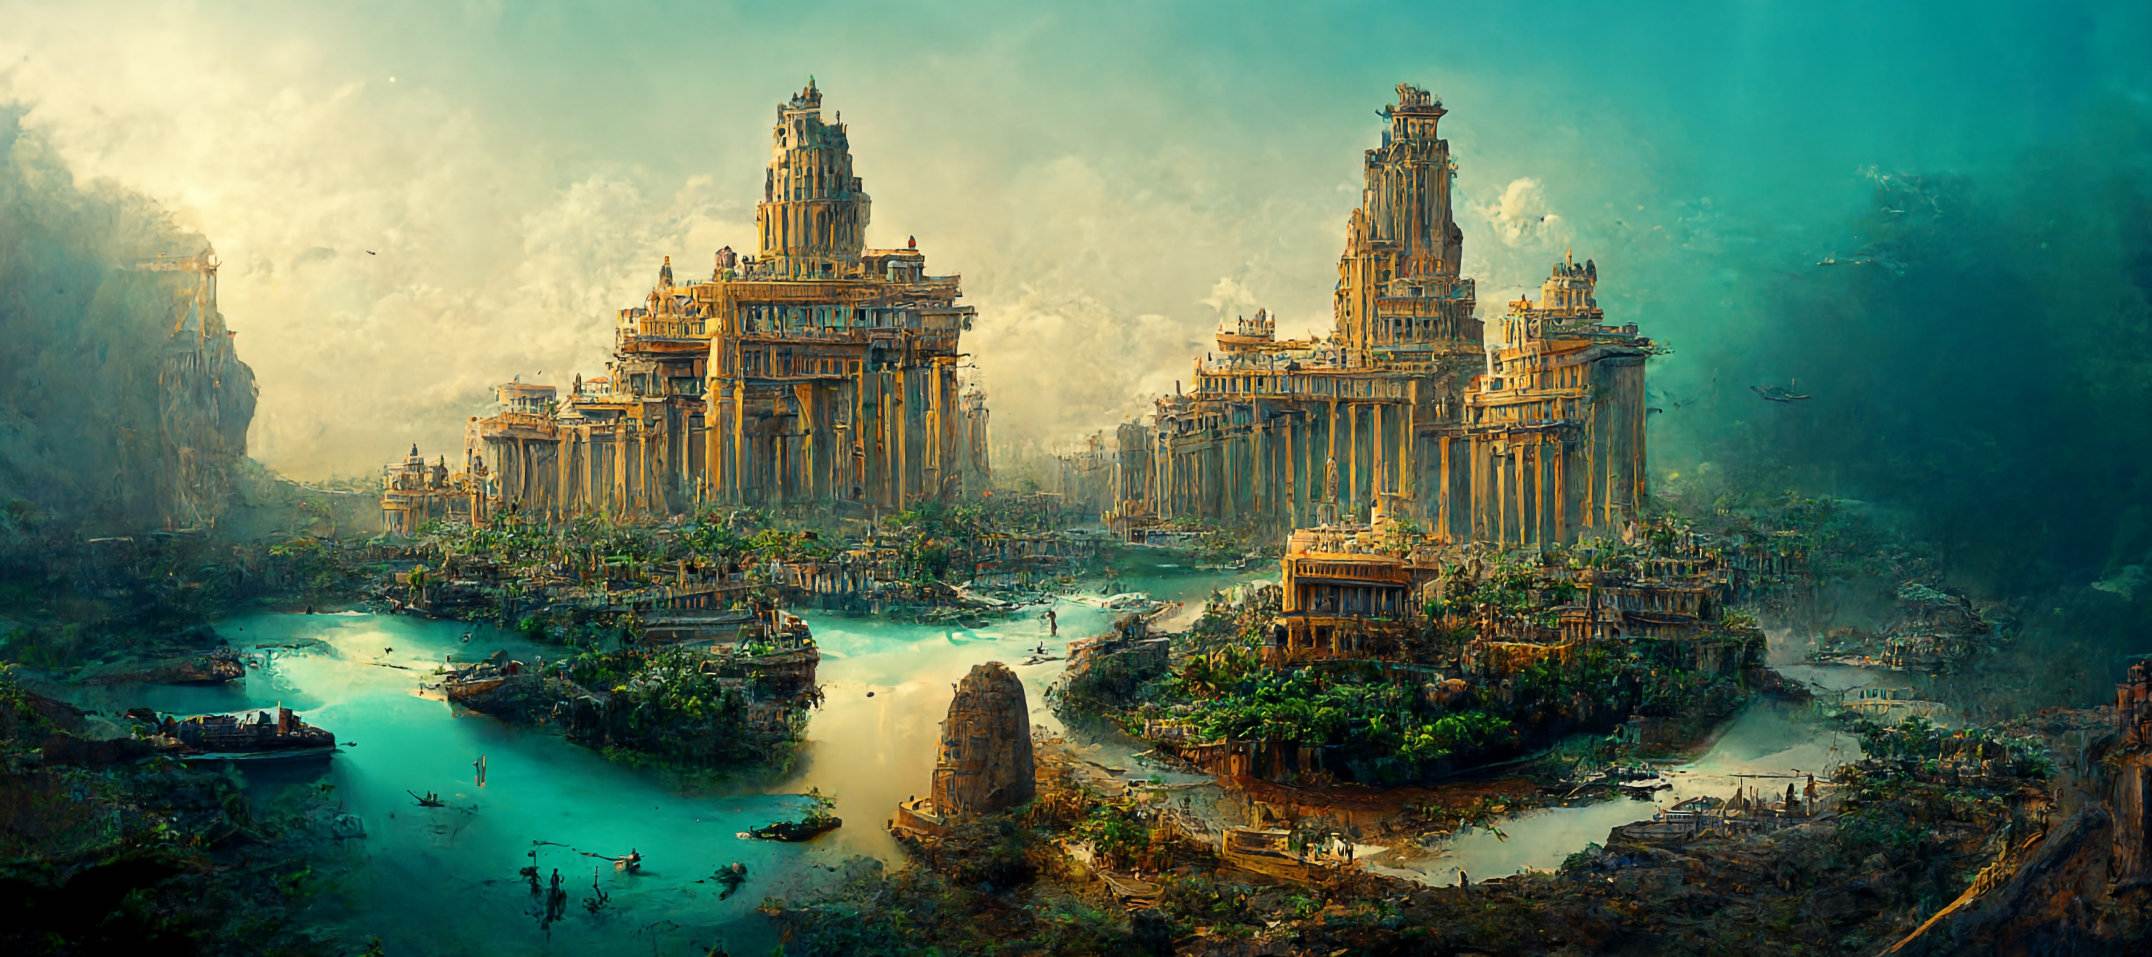 Wajah Harakbut – penjaga kuno kota El Dorado yang terlupakan? 3